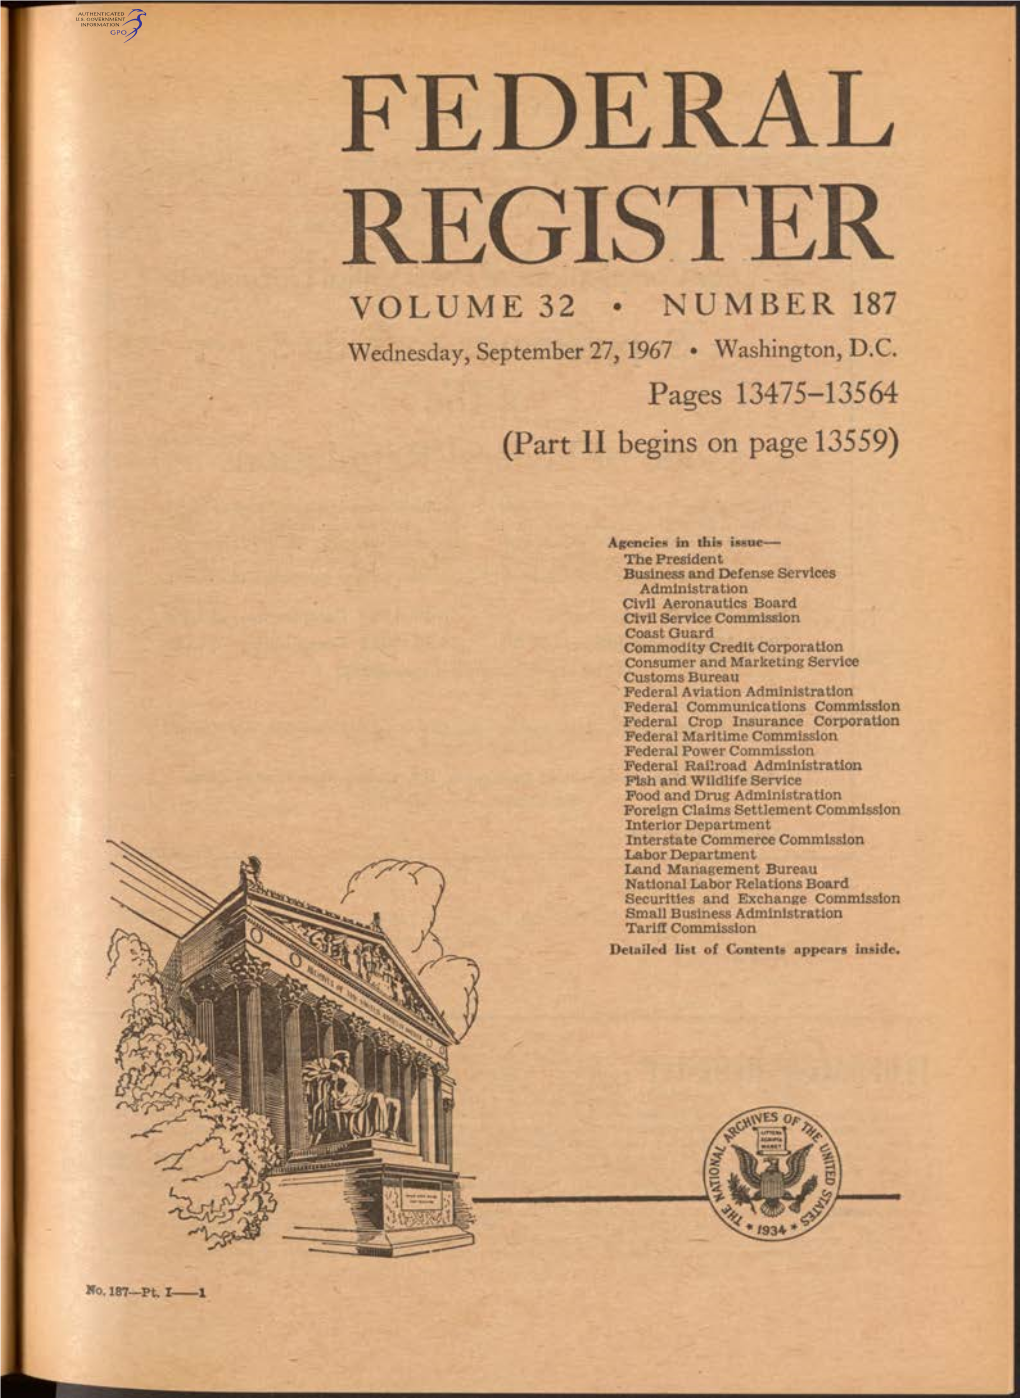 FEDERAL REGISTER VOLUME 32 • NUMBER 187 Wednesday, September 27,1967 • Washington, D.C